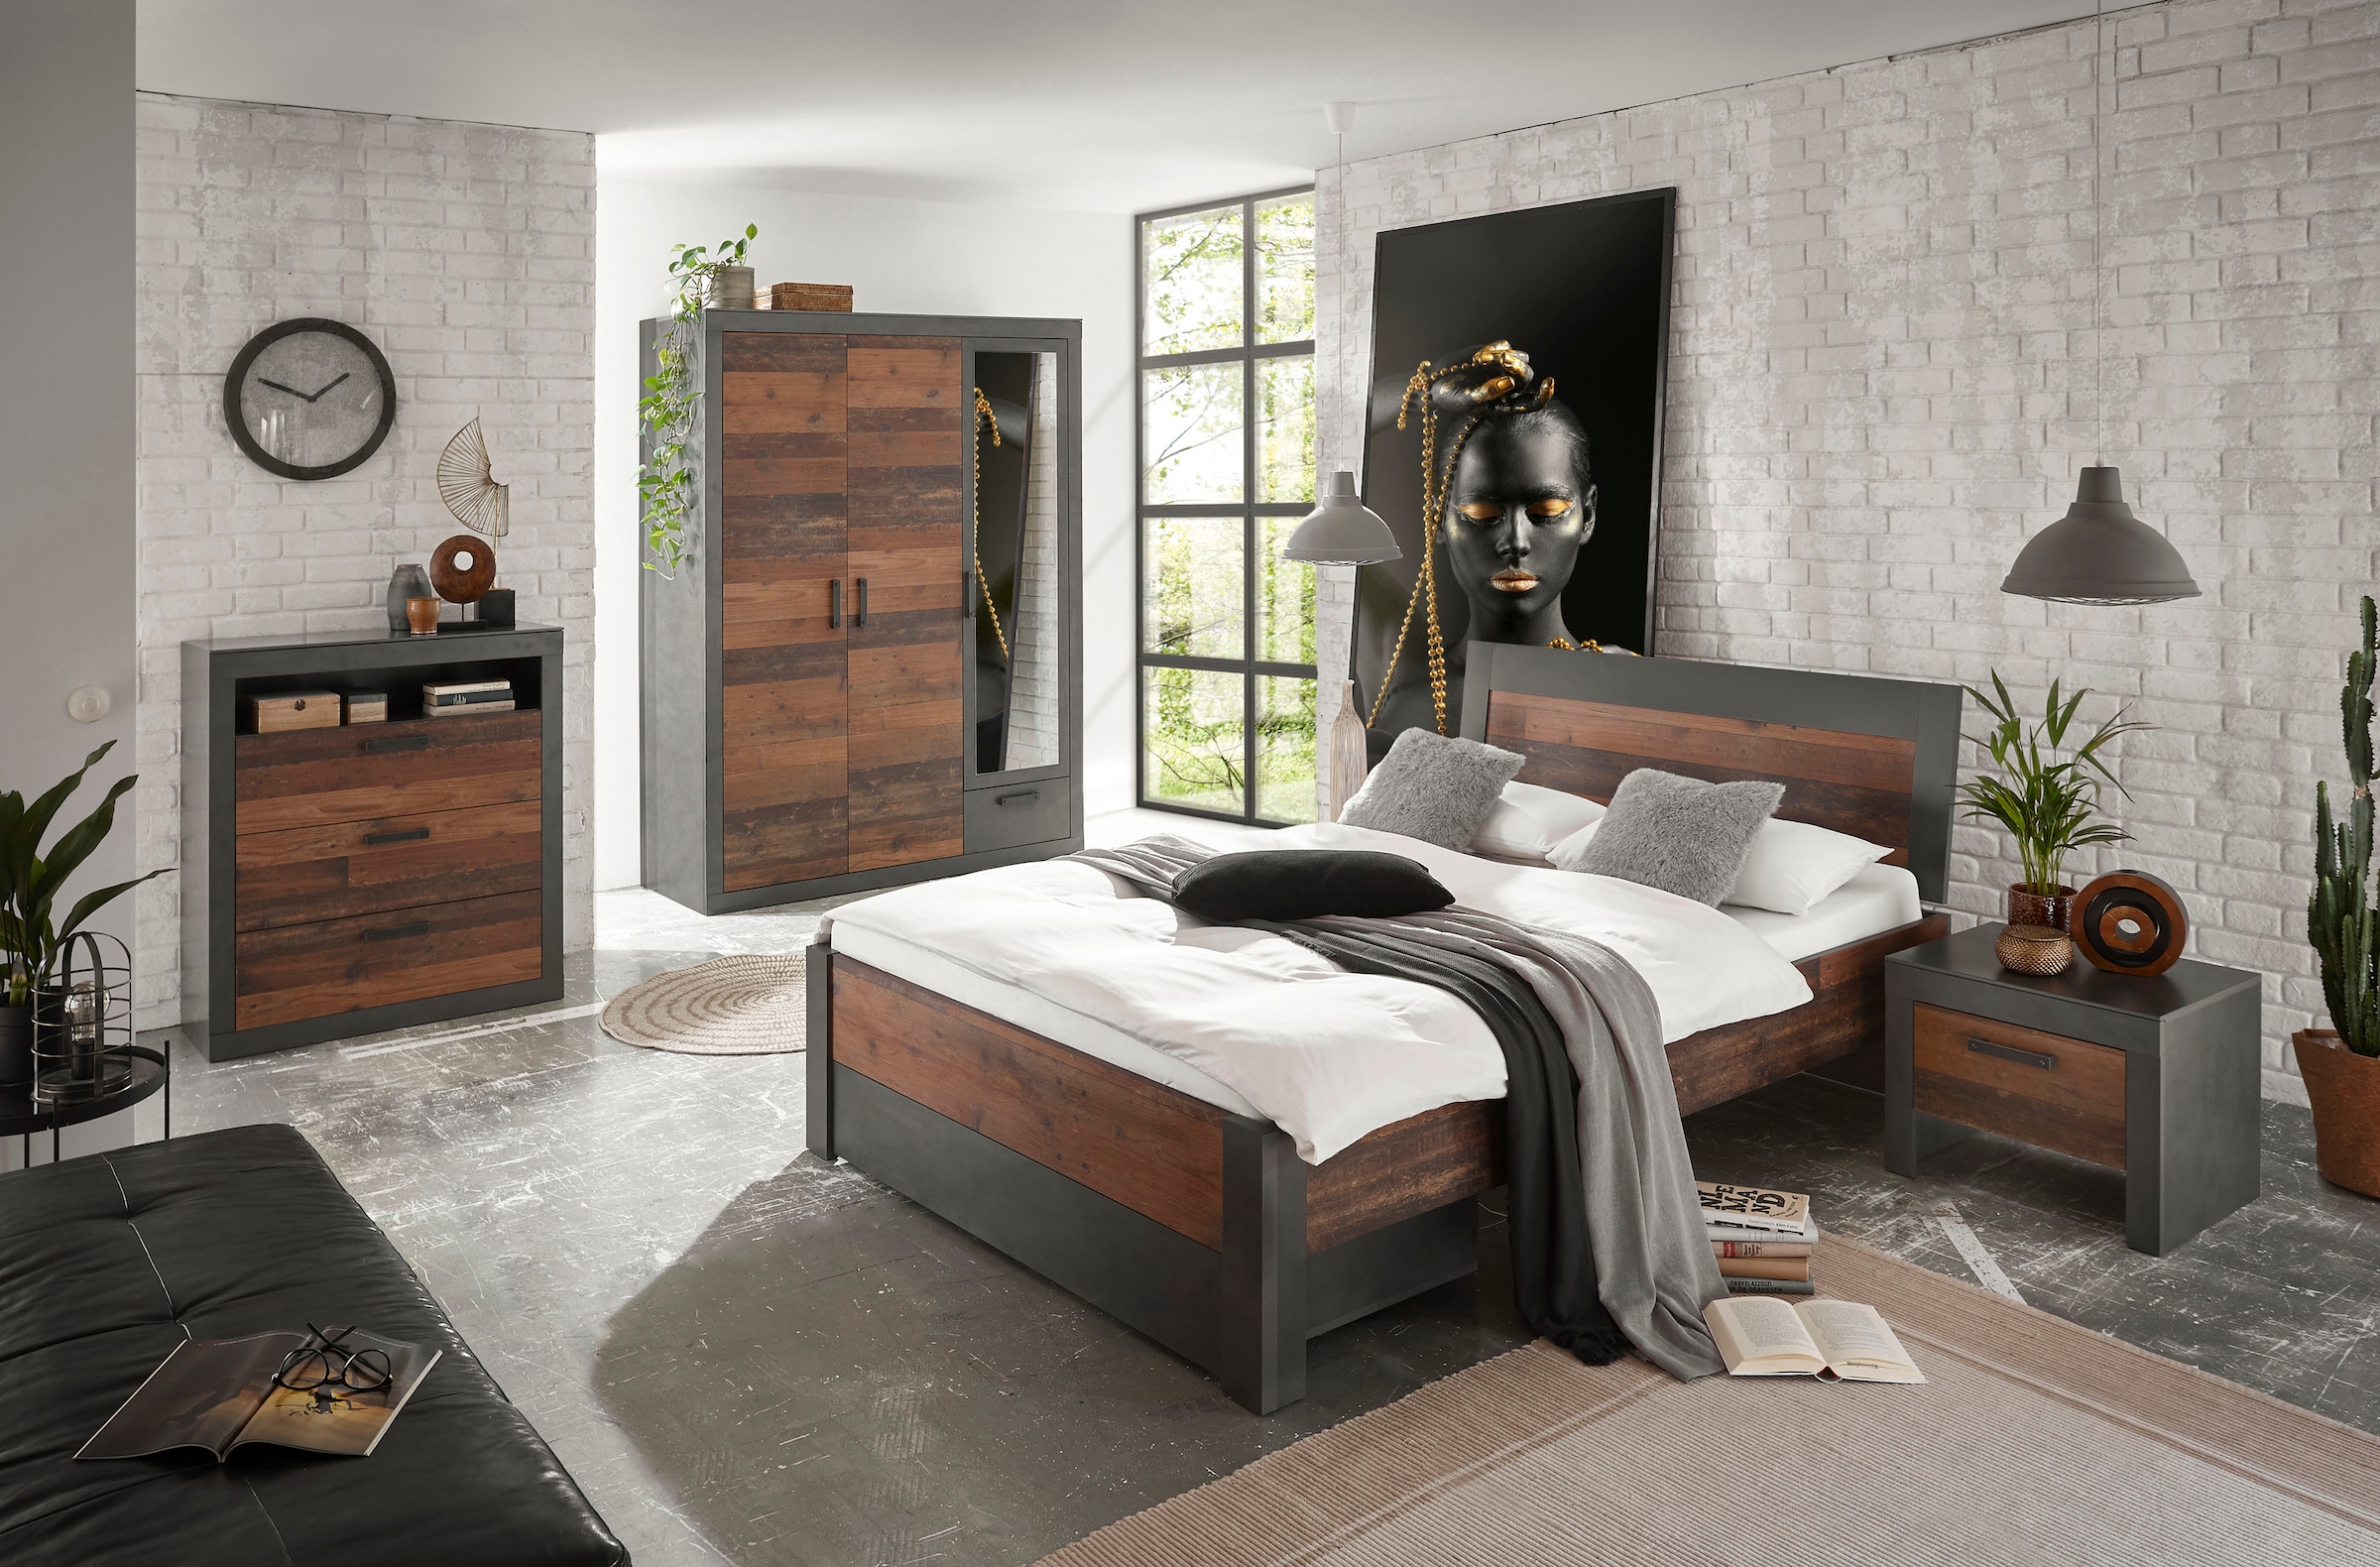 Home affaire Schlafzimmer-Set »BROOKLYN«, (Set, 5 St.), Bett mit Holzkopfteil und Schublade